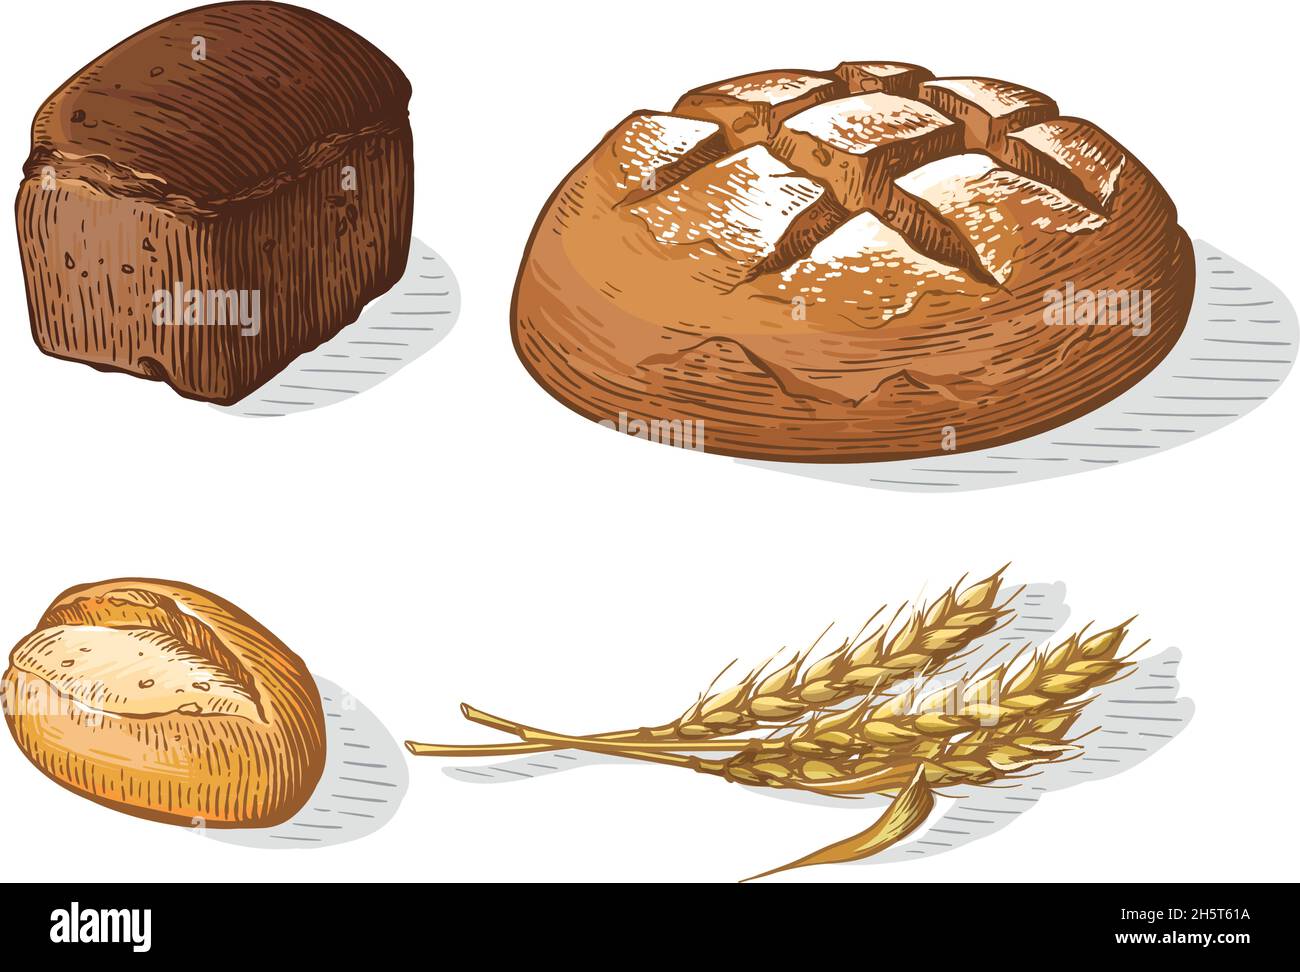 Illustration de l'ensemble de pain dessiné à la main et coloré.Autres types de blé, farine de pain frais.Collection gravée de boulangerie alimentaire au gluten Illustration de Vecteur